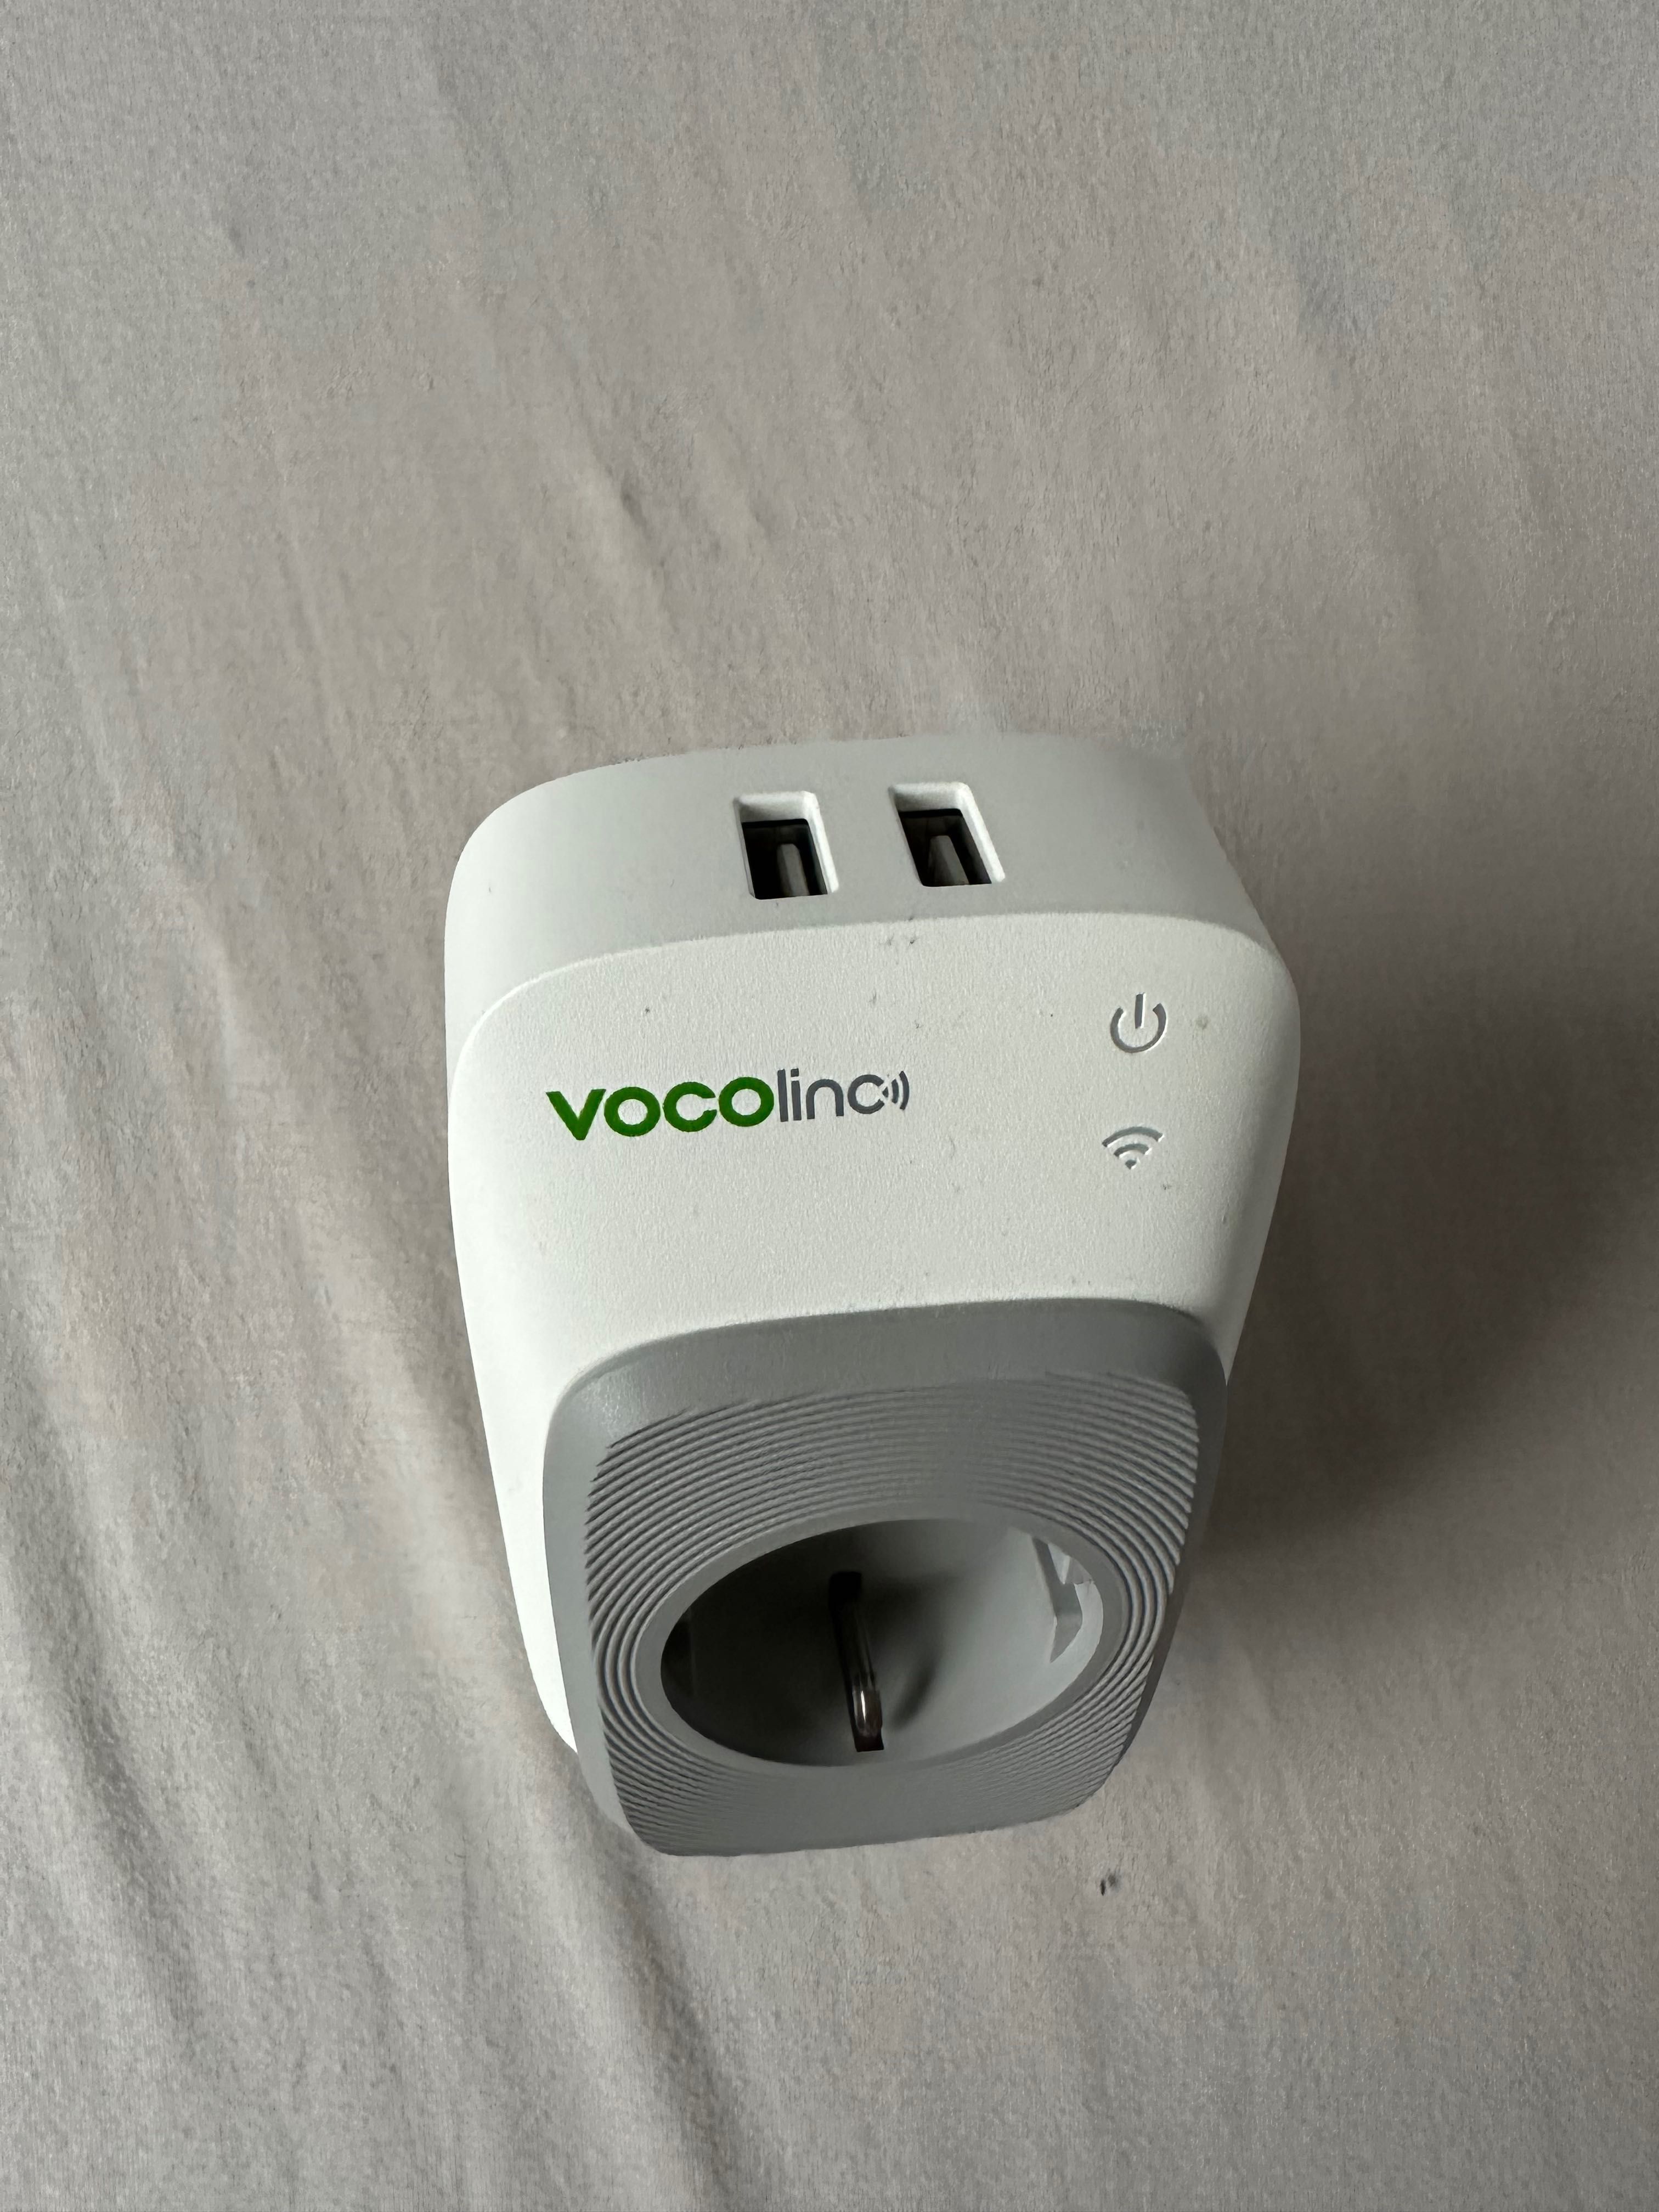 Gniazdko VOCOlinc Smart WI-FI Power Plug z portami USB Homekit